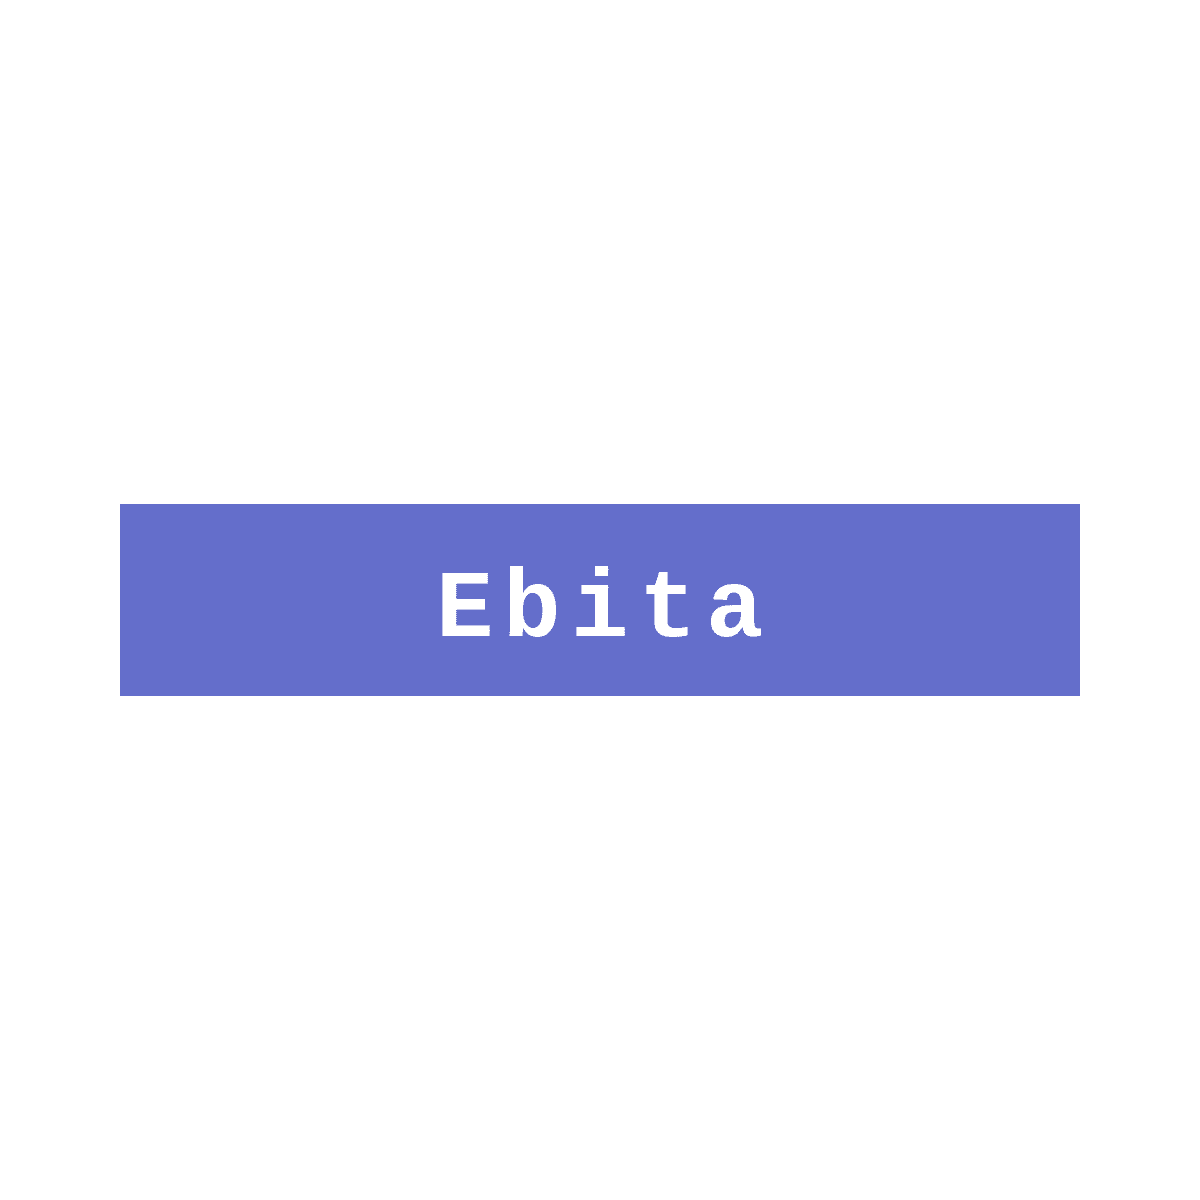 Ebita